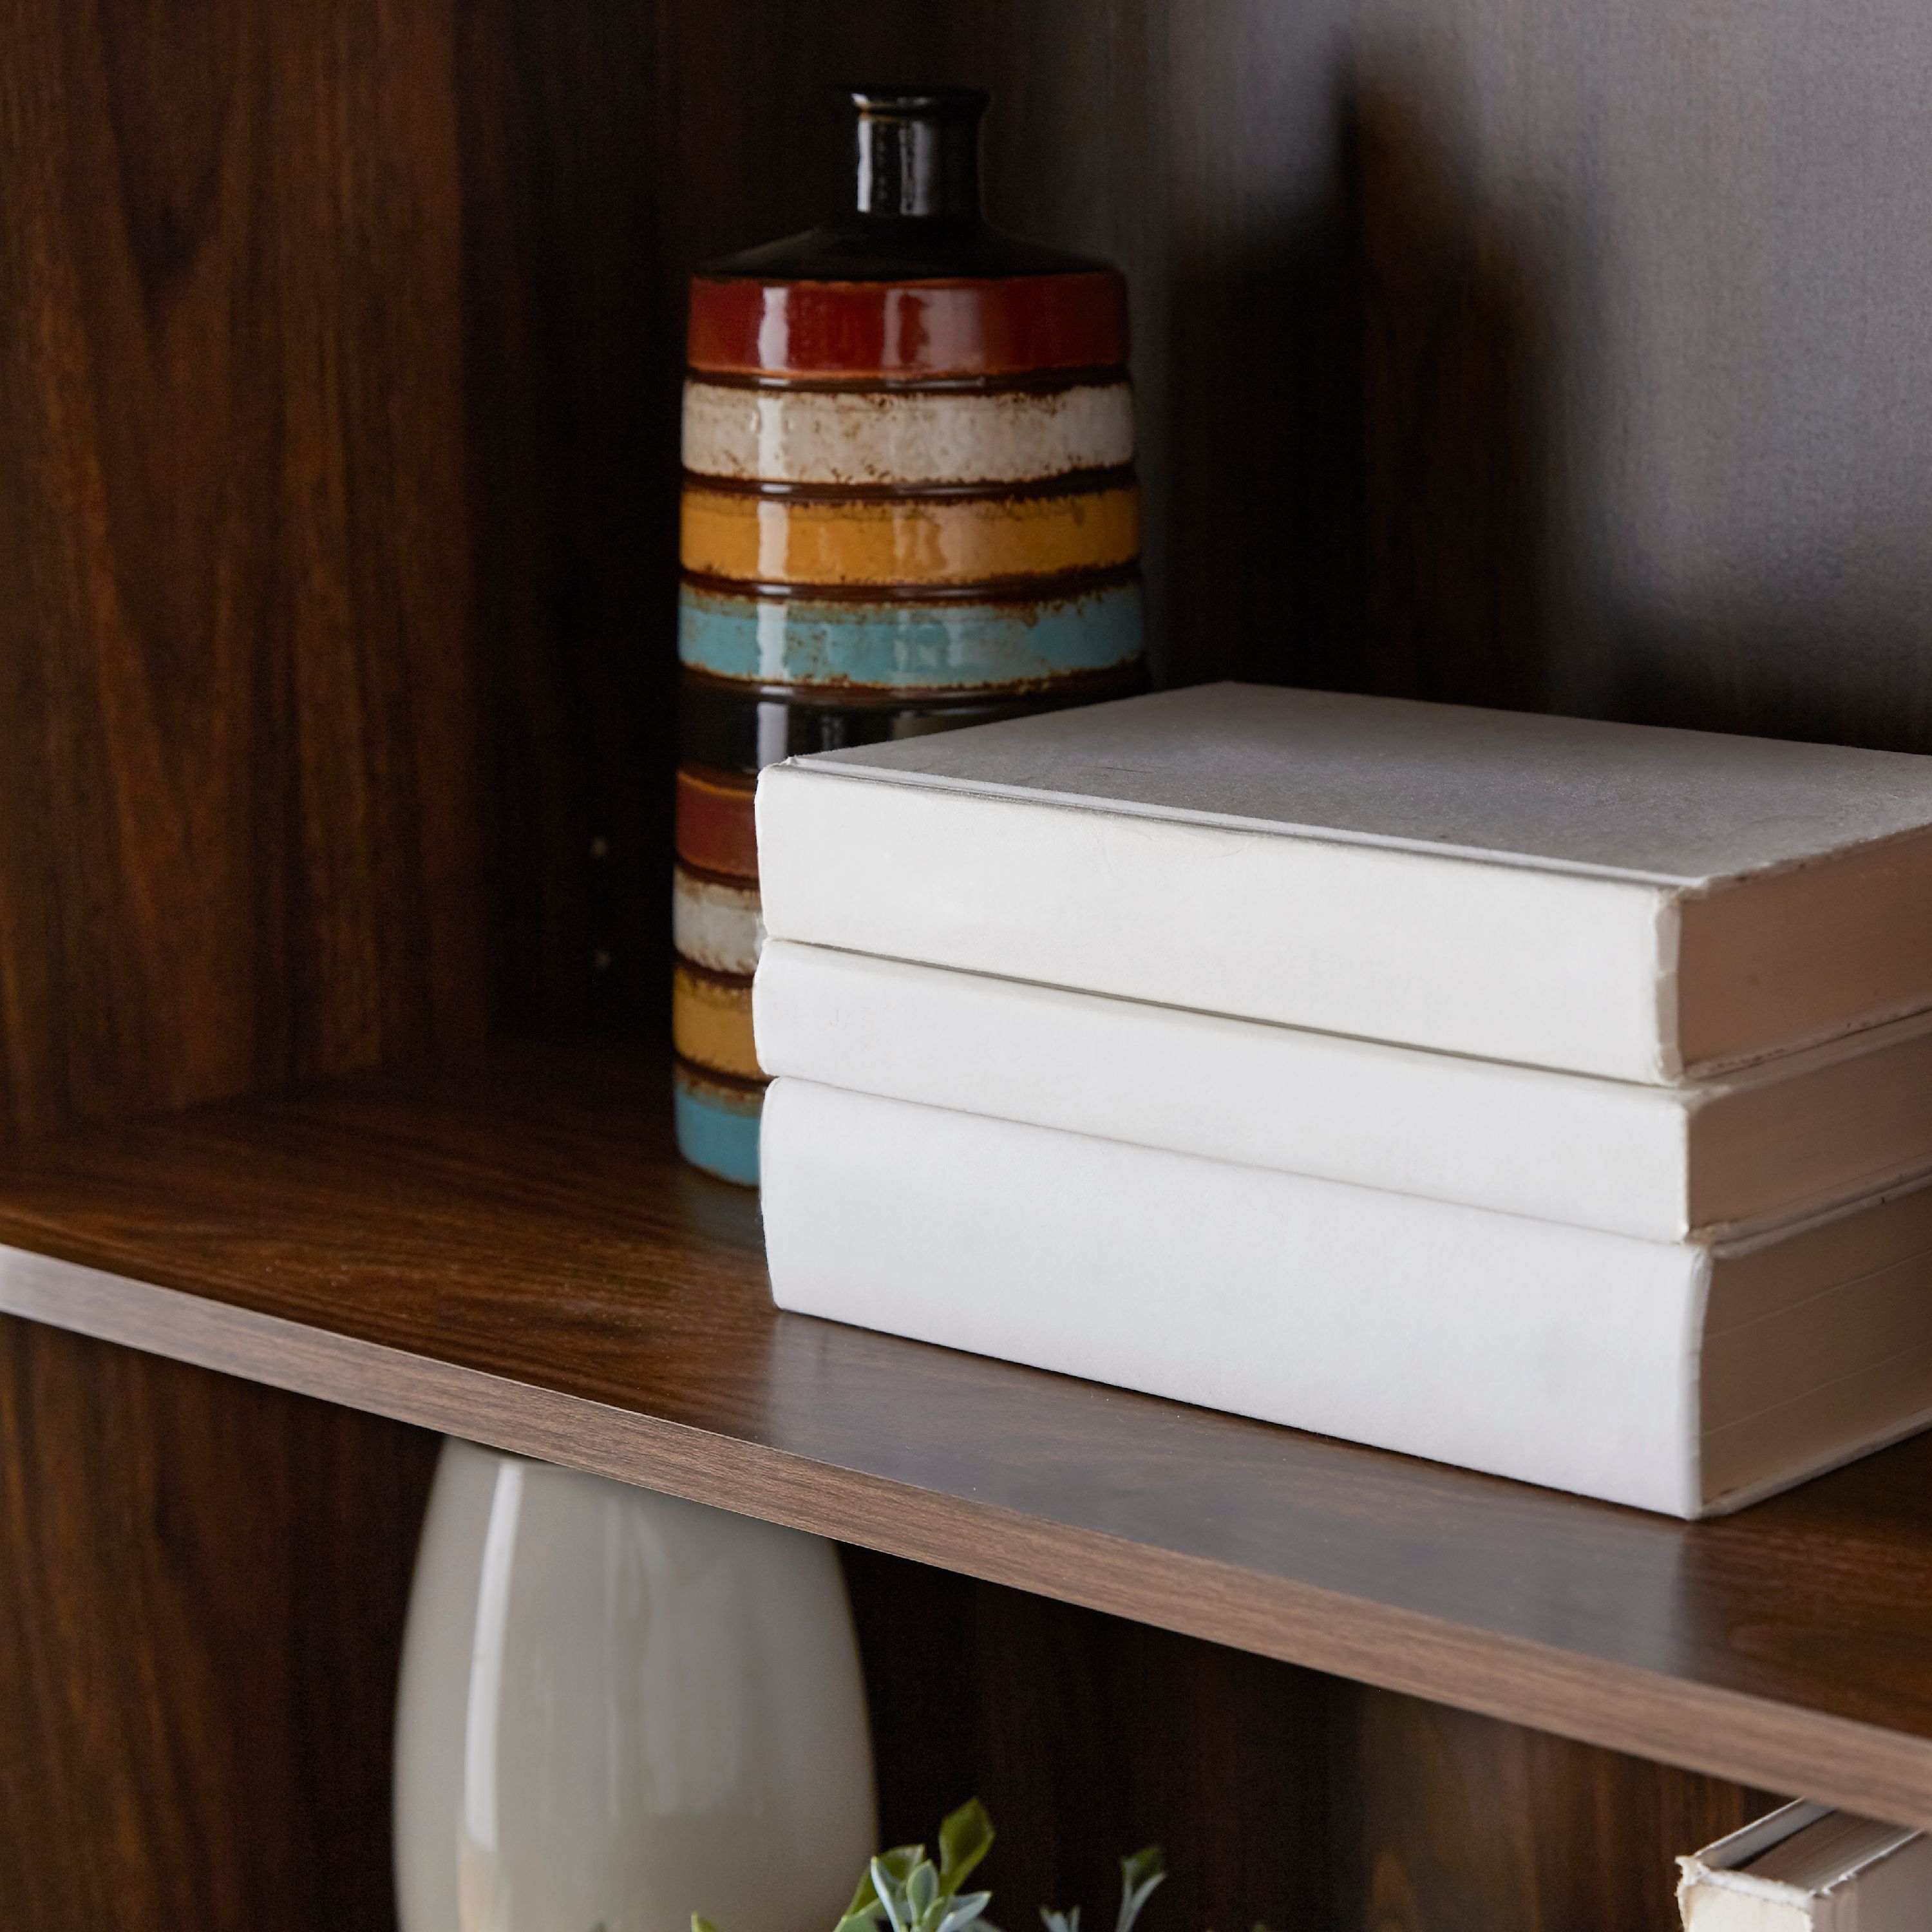 Mainstays 5-Shelf Bookcase with Adjustable Shelves, Canyon Walnut - image 2 of 5